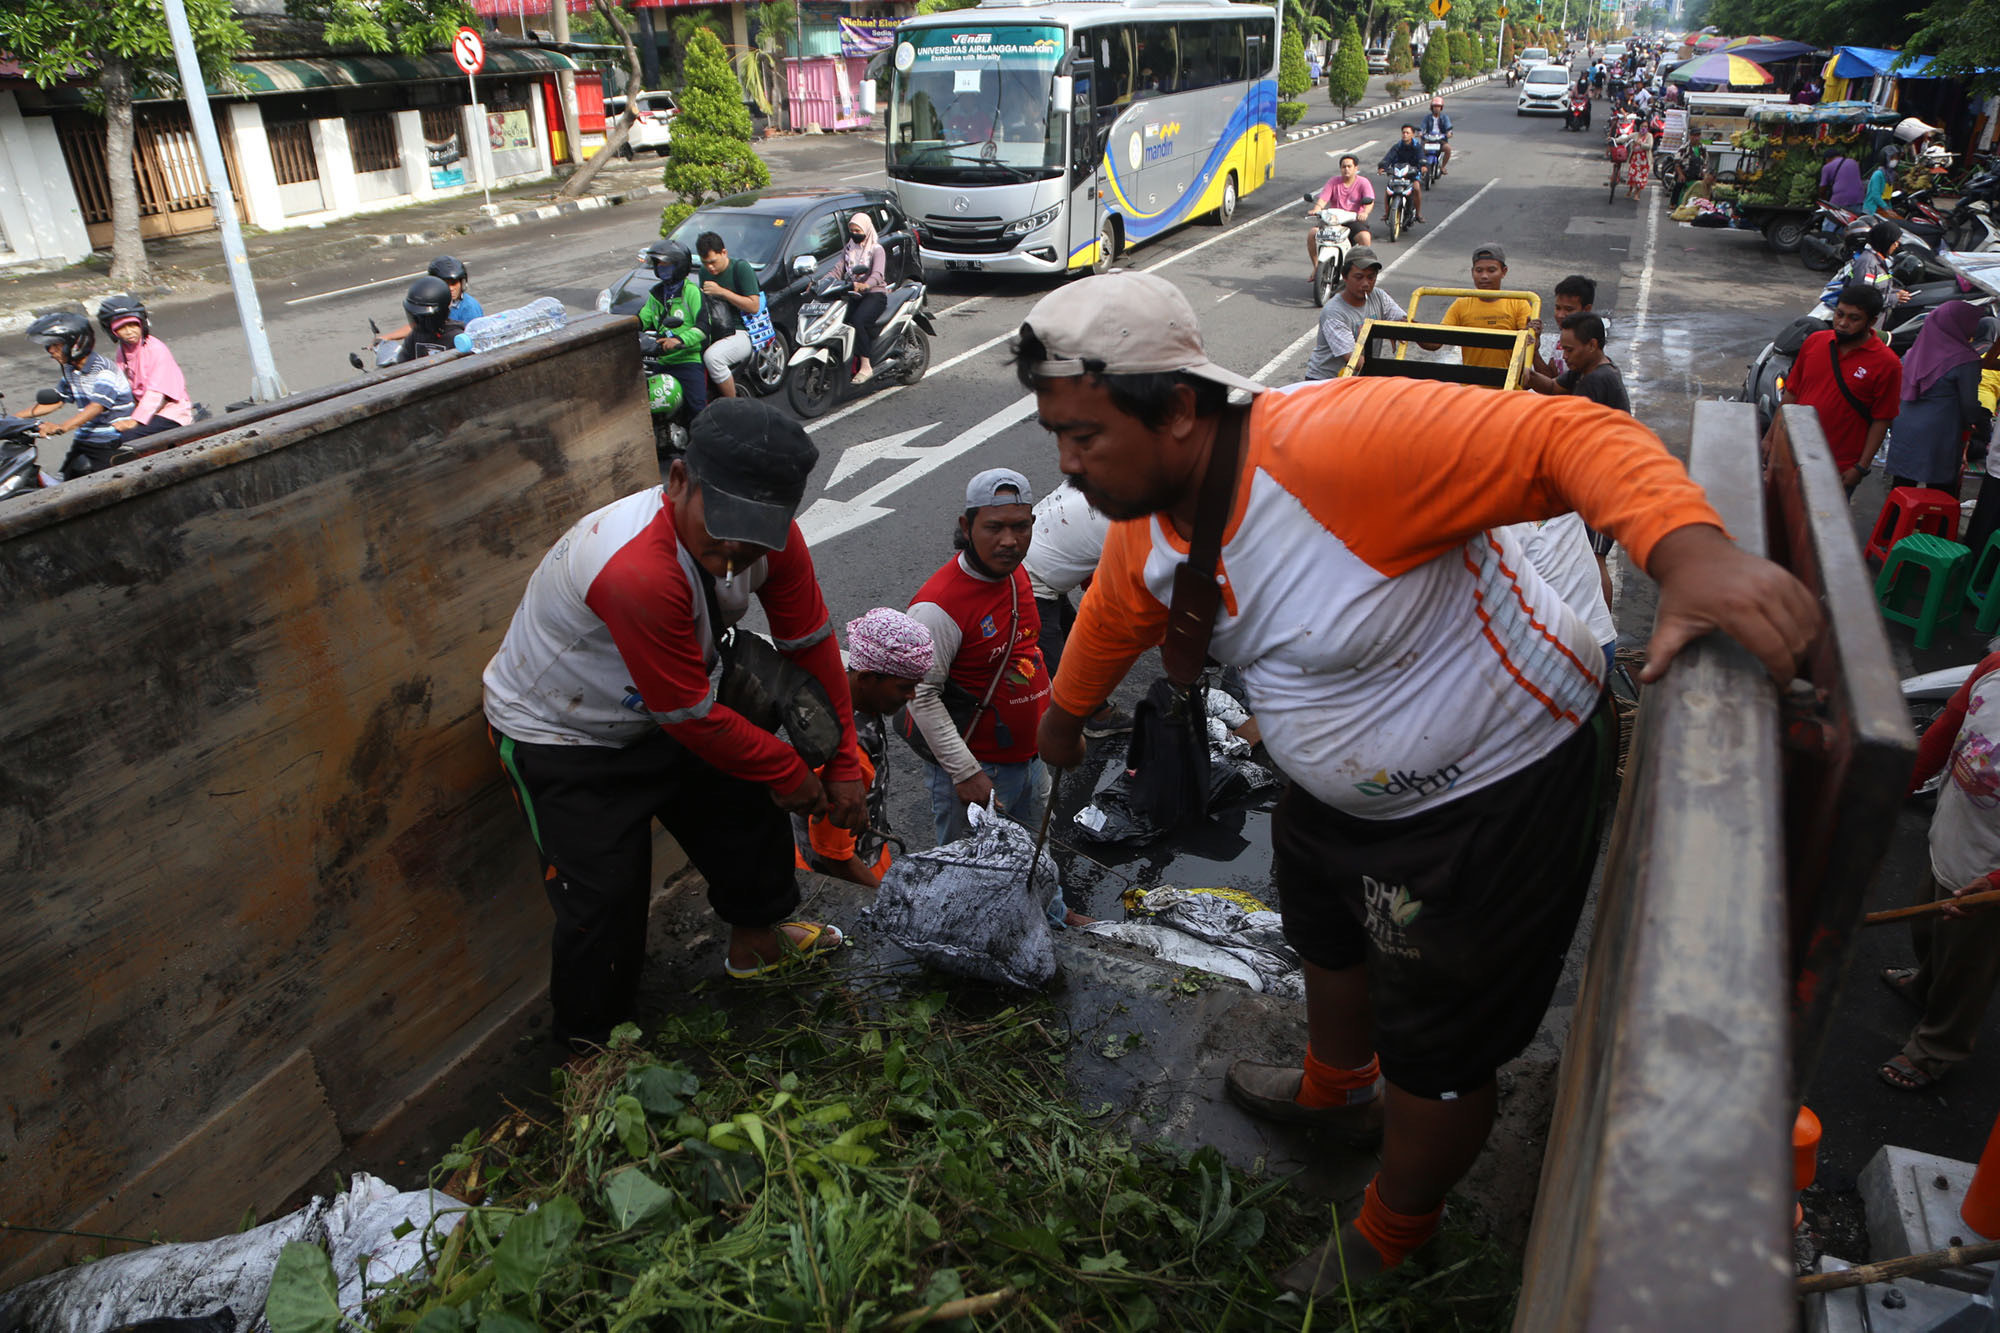 Hasil Program Surabaya Bergerak, Pemkot Angkut 700 Ton Sampah di Perkampungan - JPNN.com Jatim